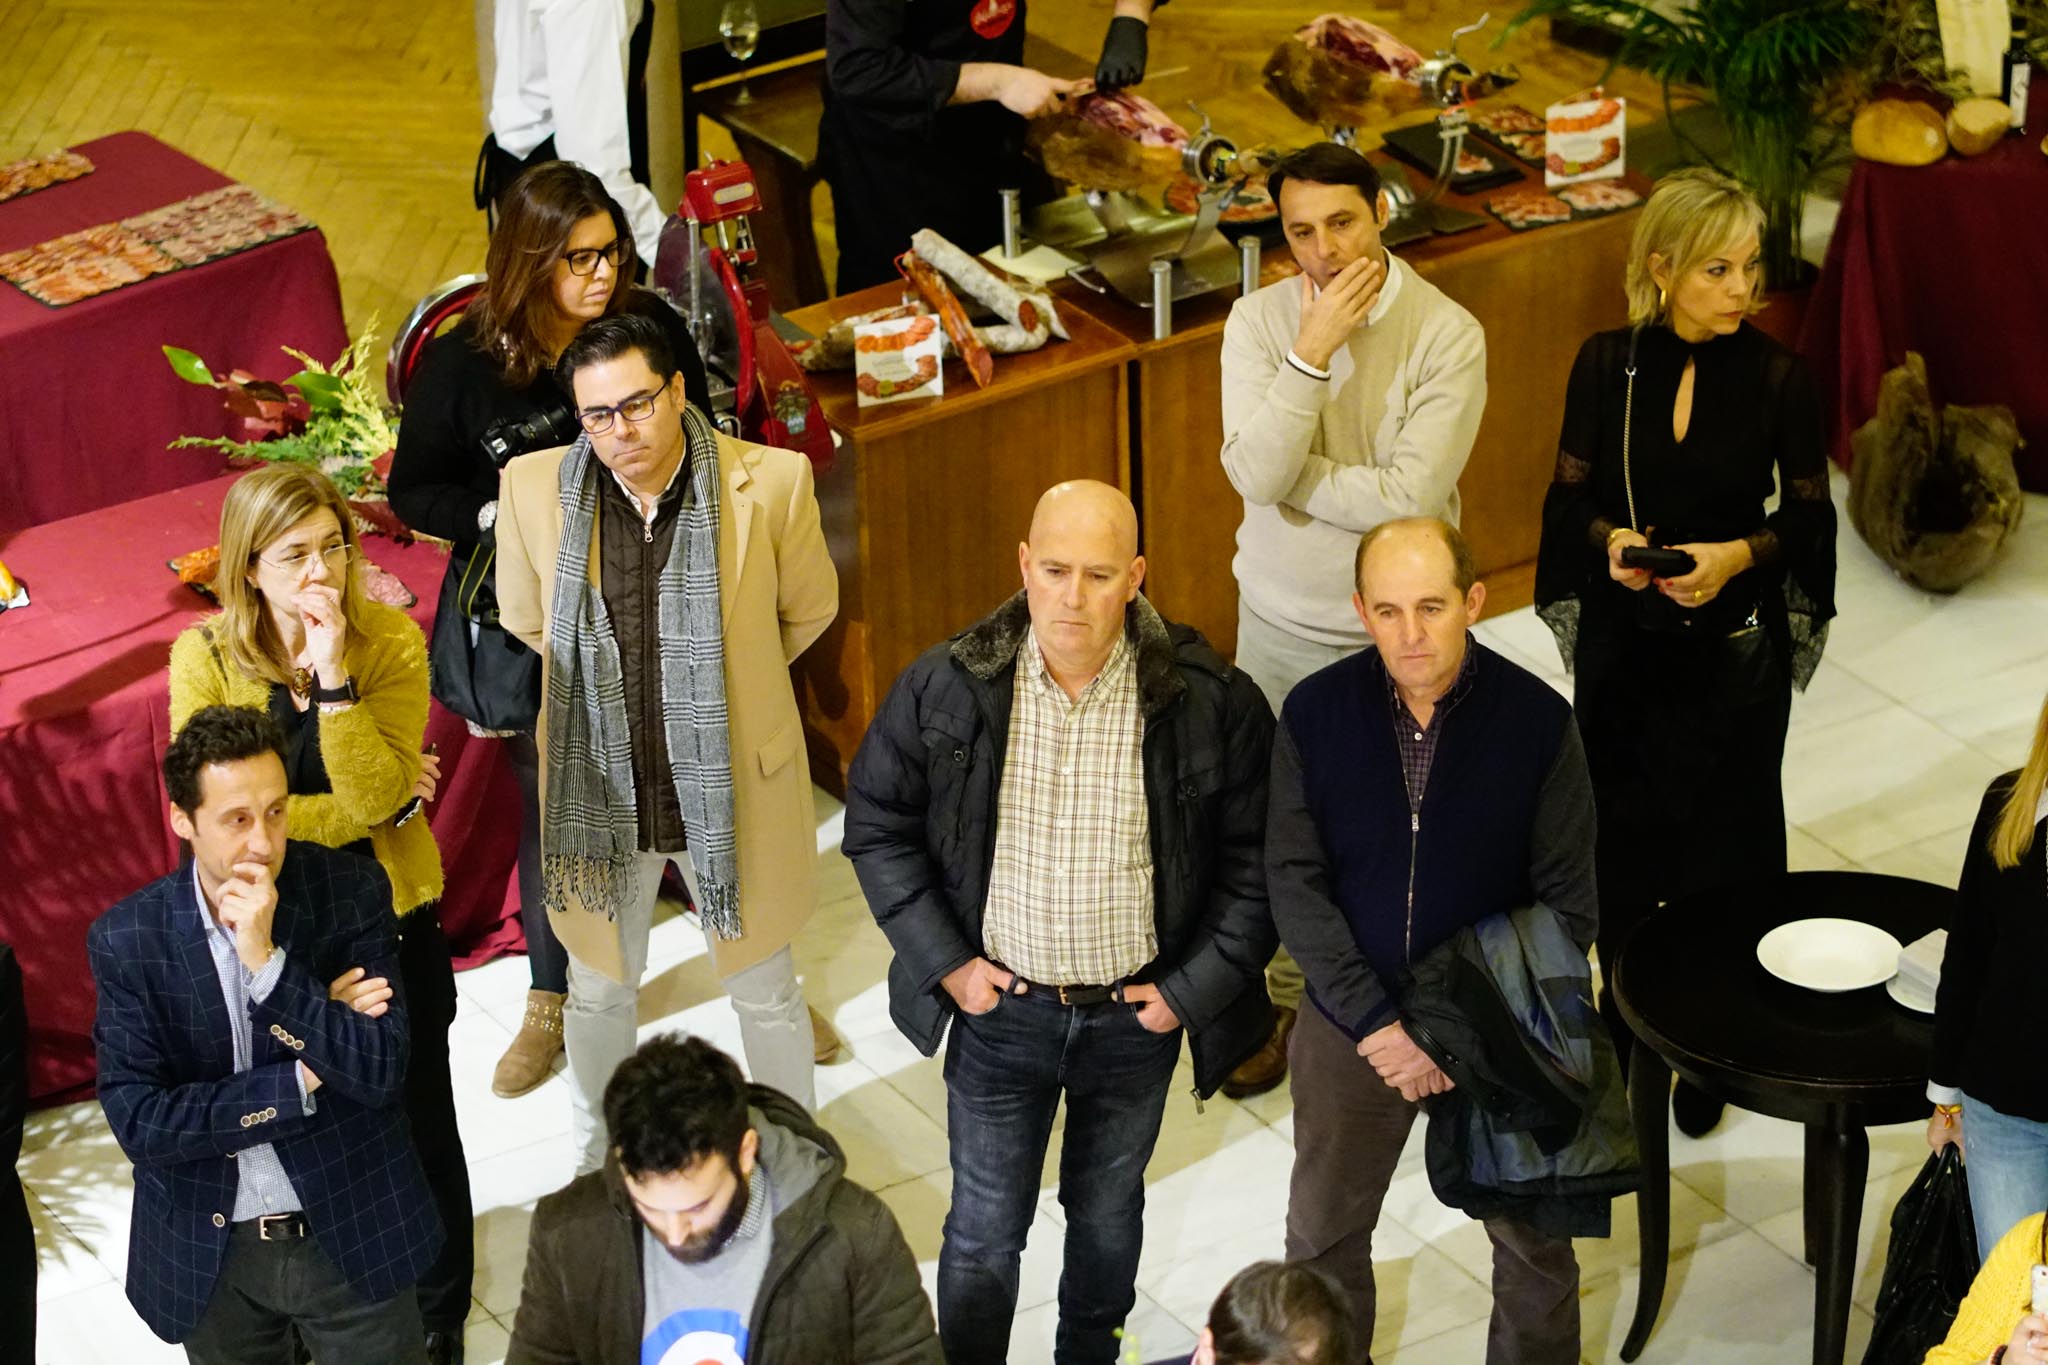 Club de Producto puesto en marcha por la Diputación de Salamanca que aglutina, en la actualidad a unos 40 productores y está abierto a nuevas incorporaciones